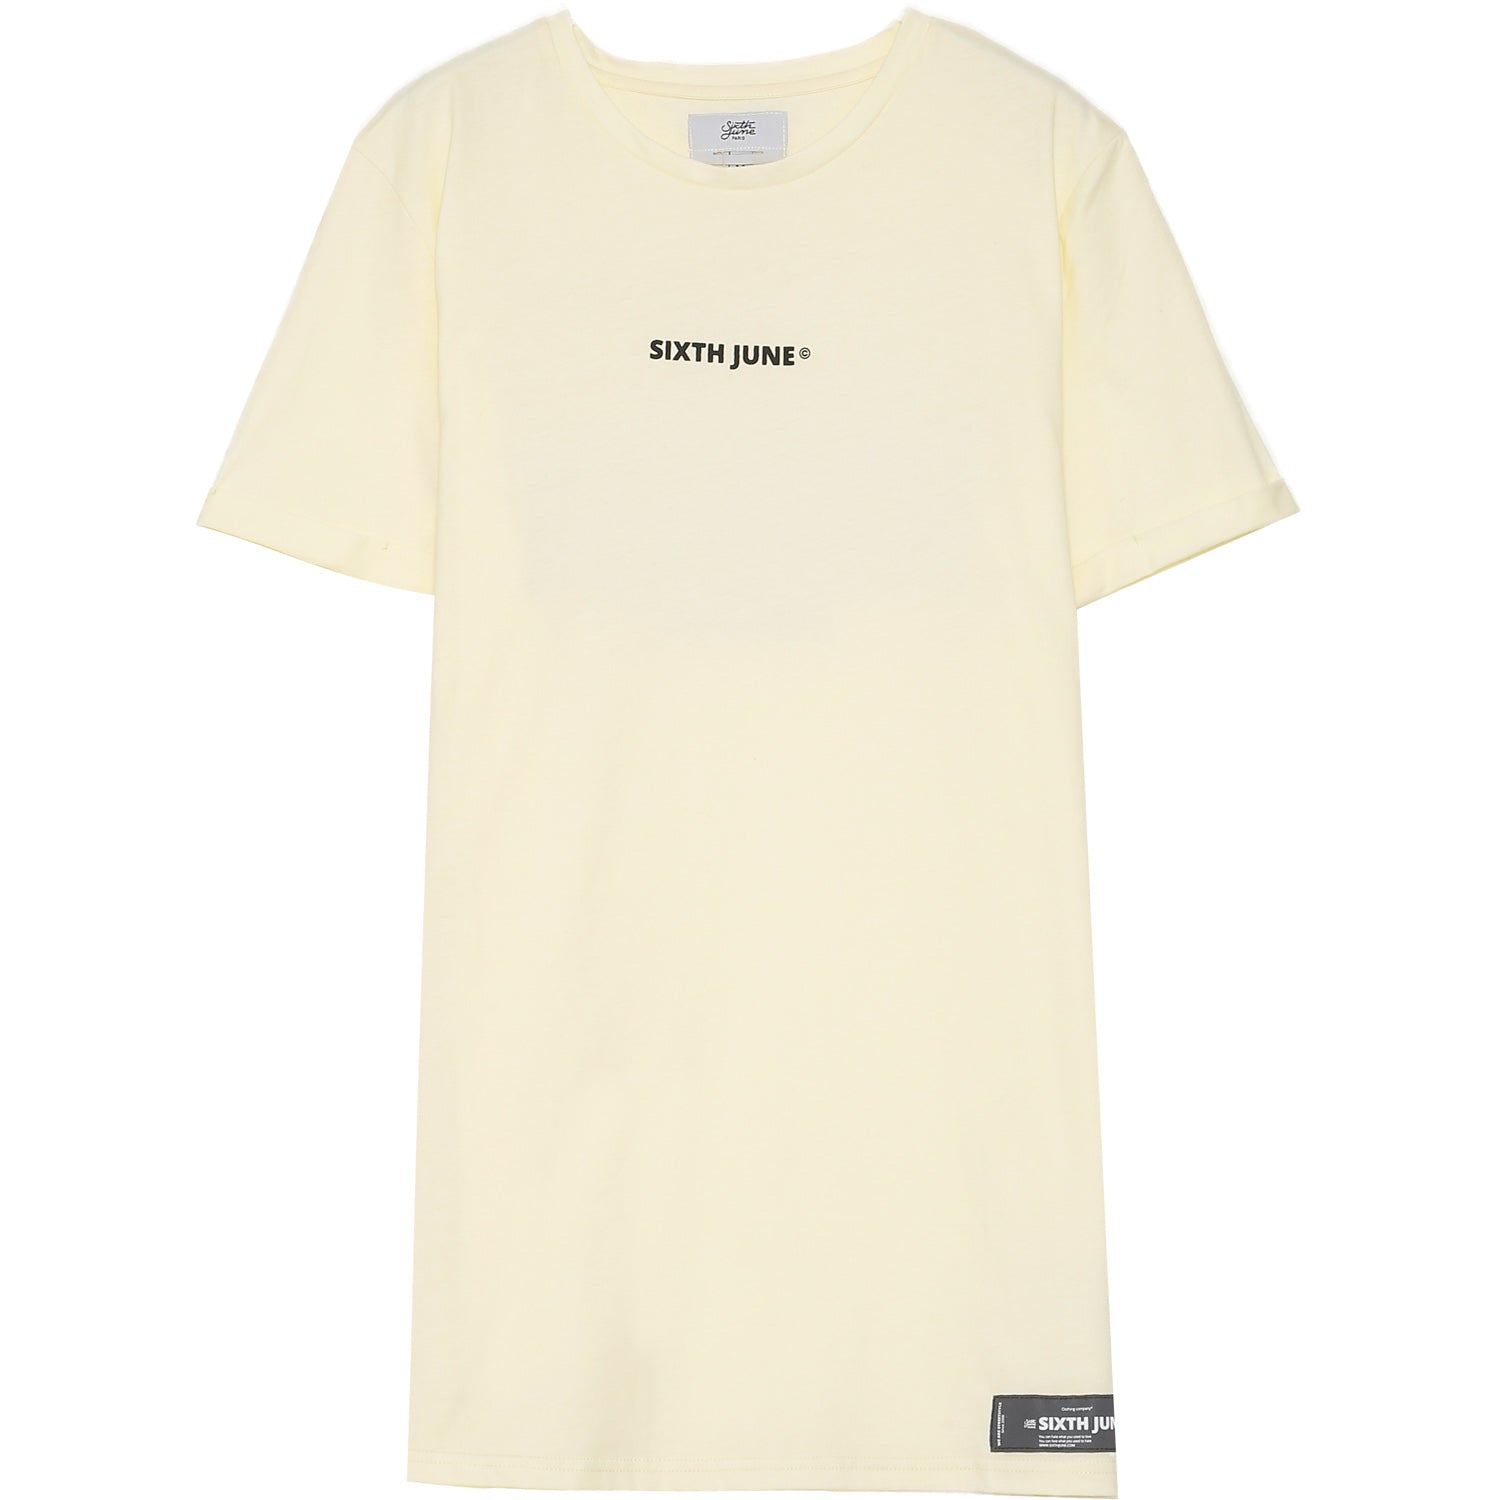 Sixth June - T-shirt image ocean jaune